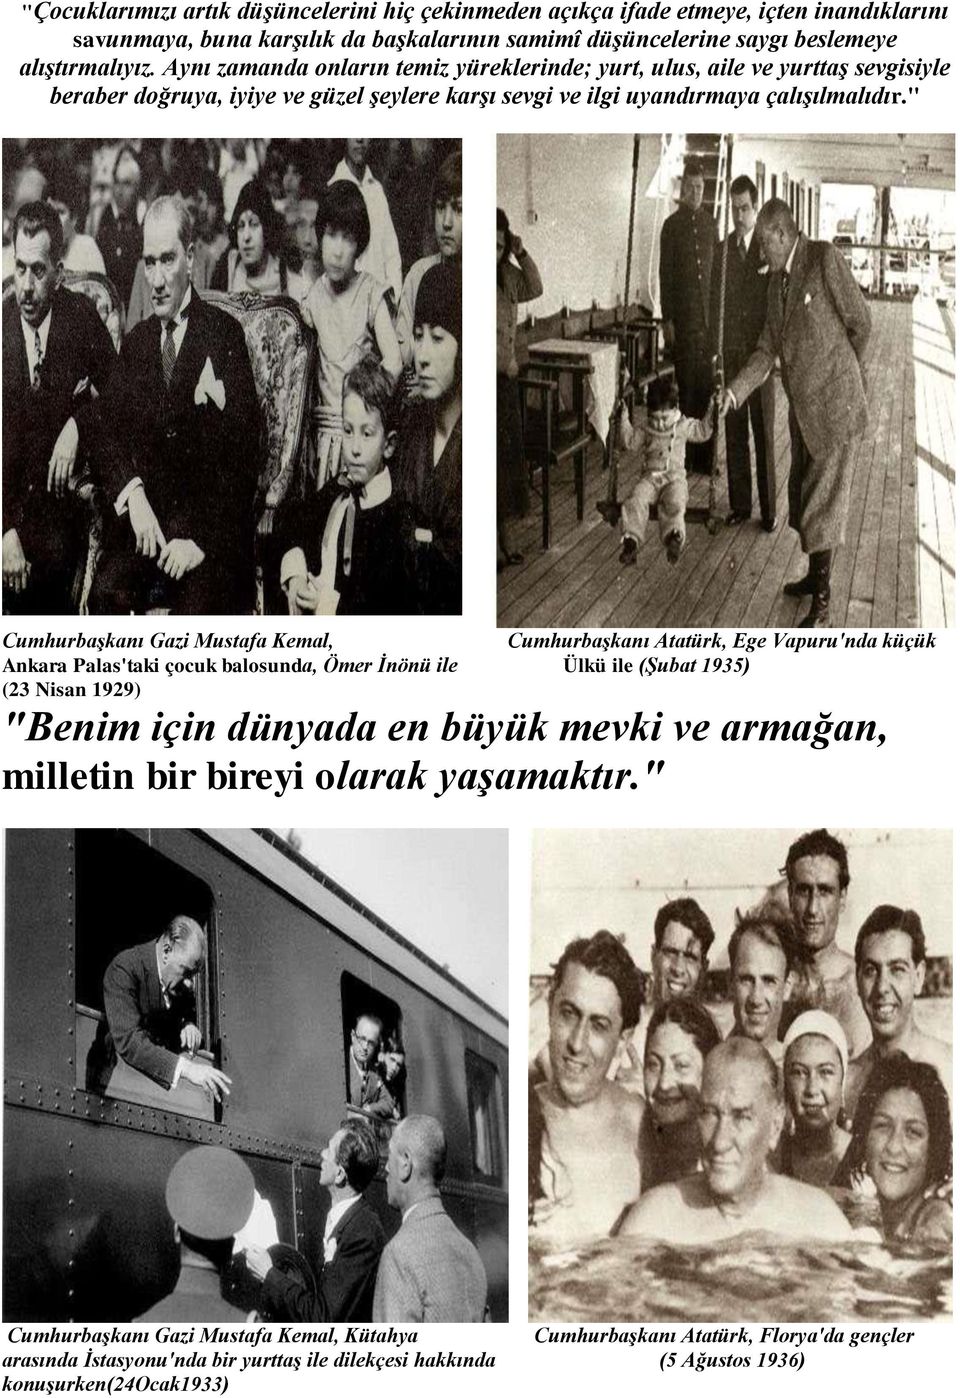 " Cumhurbaşkanı Gazi Mustafa Kemal, Cumhurbaşkanı Atatürk, Ege Vapuru'nda küçük Ankara Palas'taki çocuk balosunda, Ömer İnönü ile Ülkü ile (Şubat 1935) (23 Nisan 1929) "Benim için dünyada en büyük